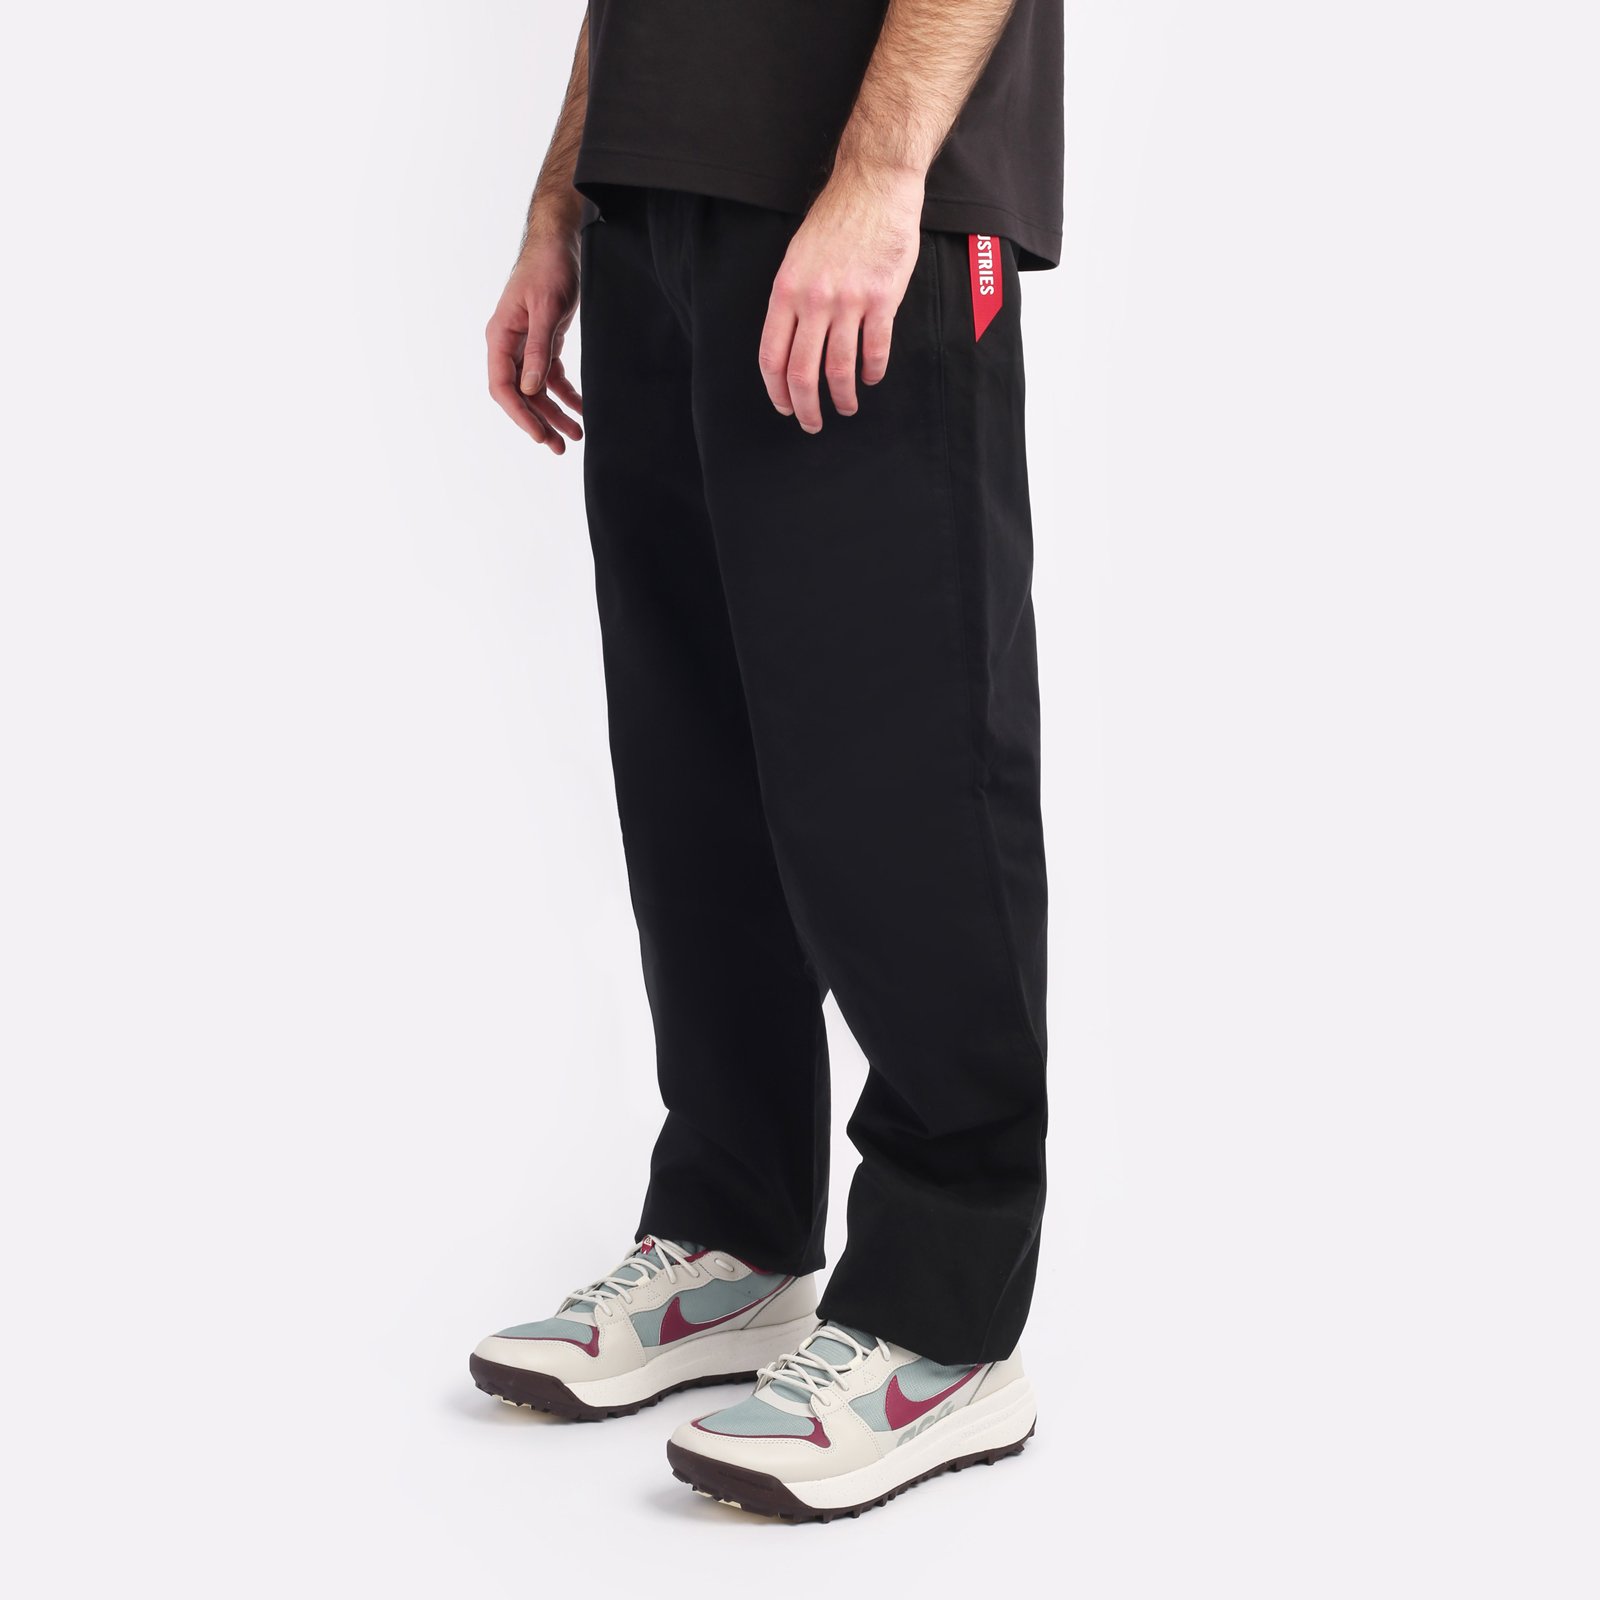 мужские брюки Alpha Industries Classic Trousers  (MBC53500CO-black)  - цена, описание, фото 3